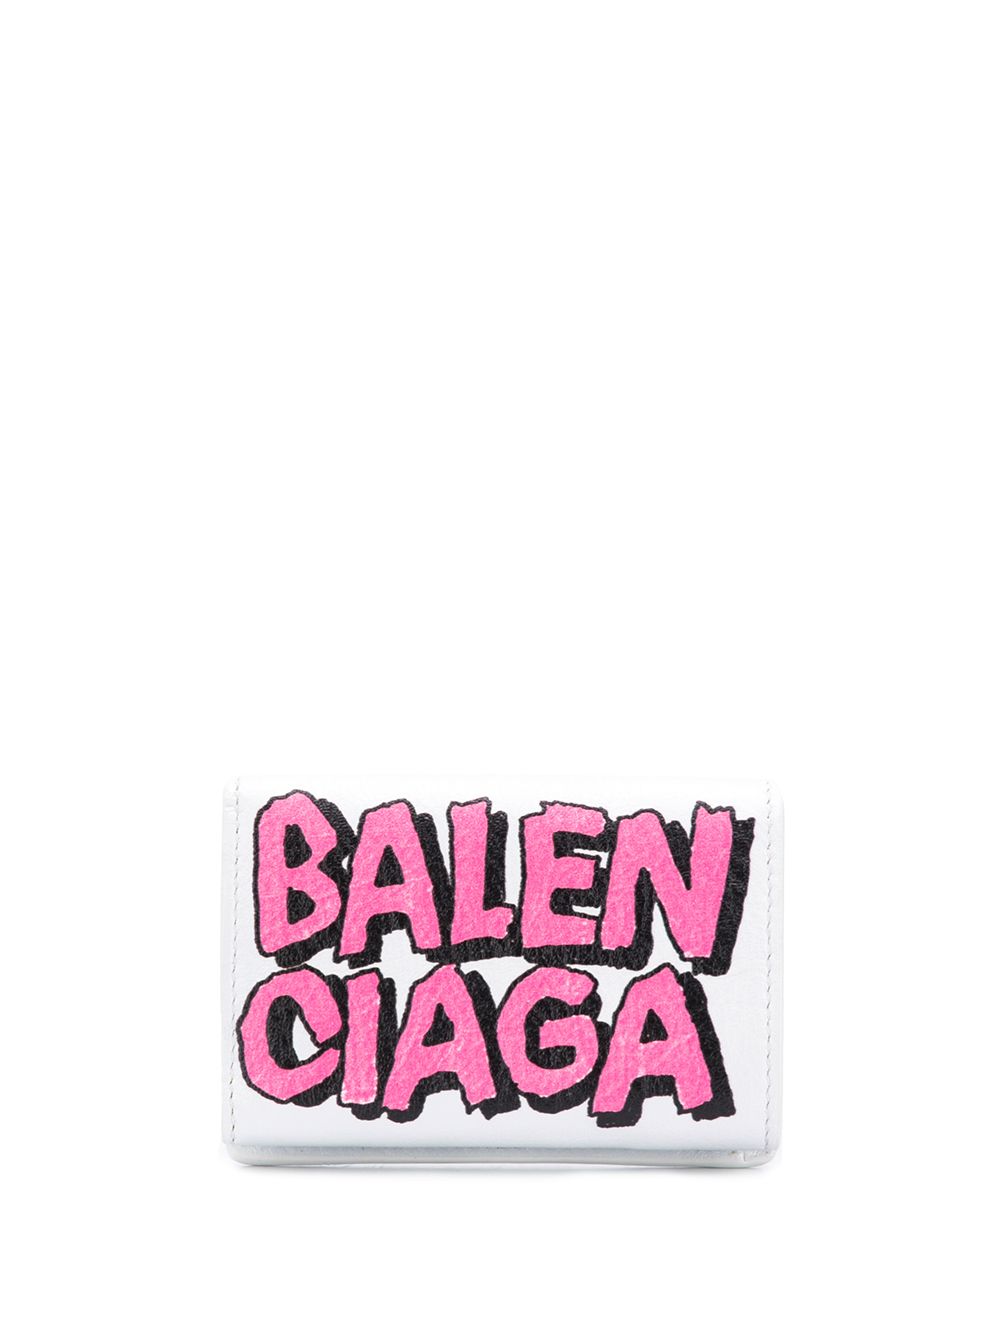 фото Balenciaga мини-кошелек Papier